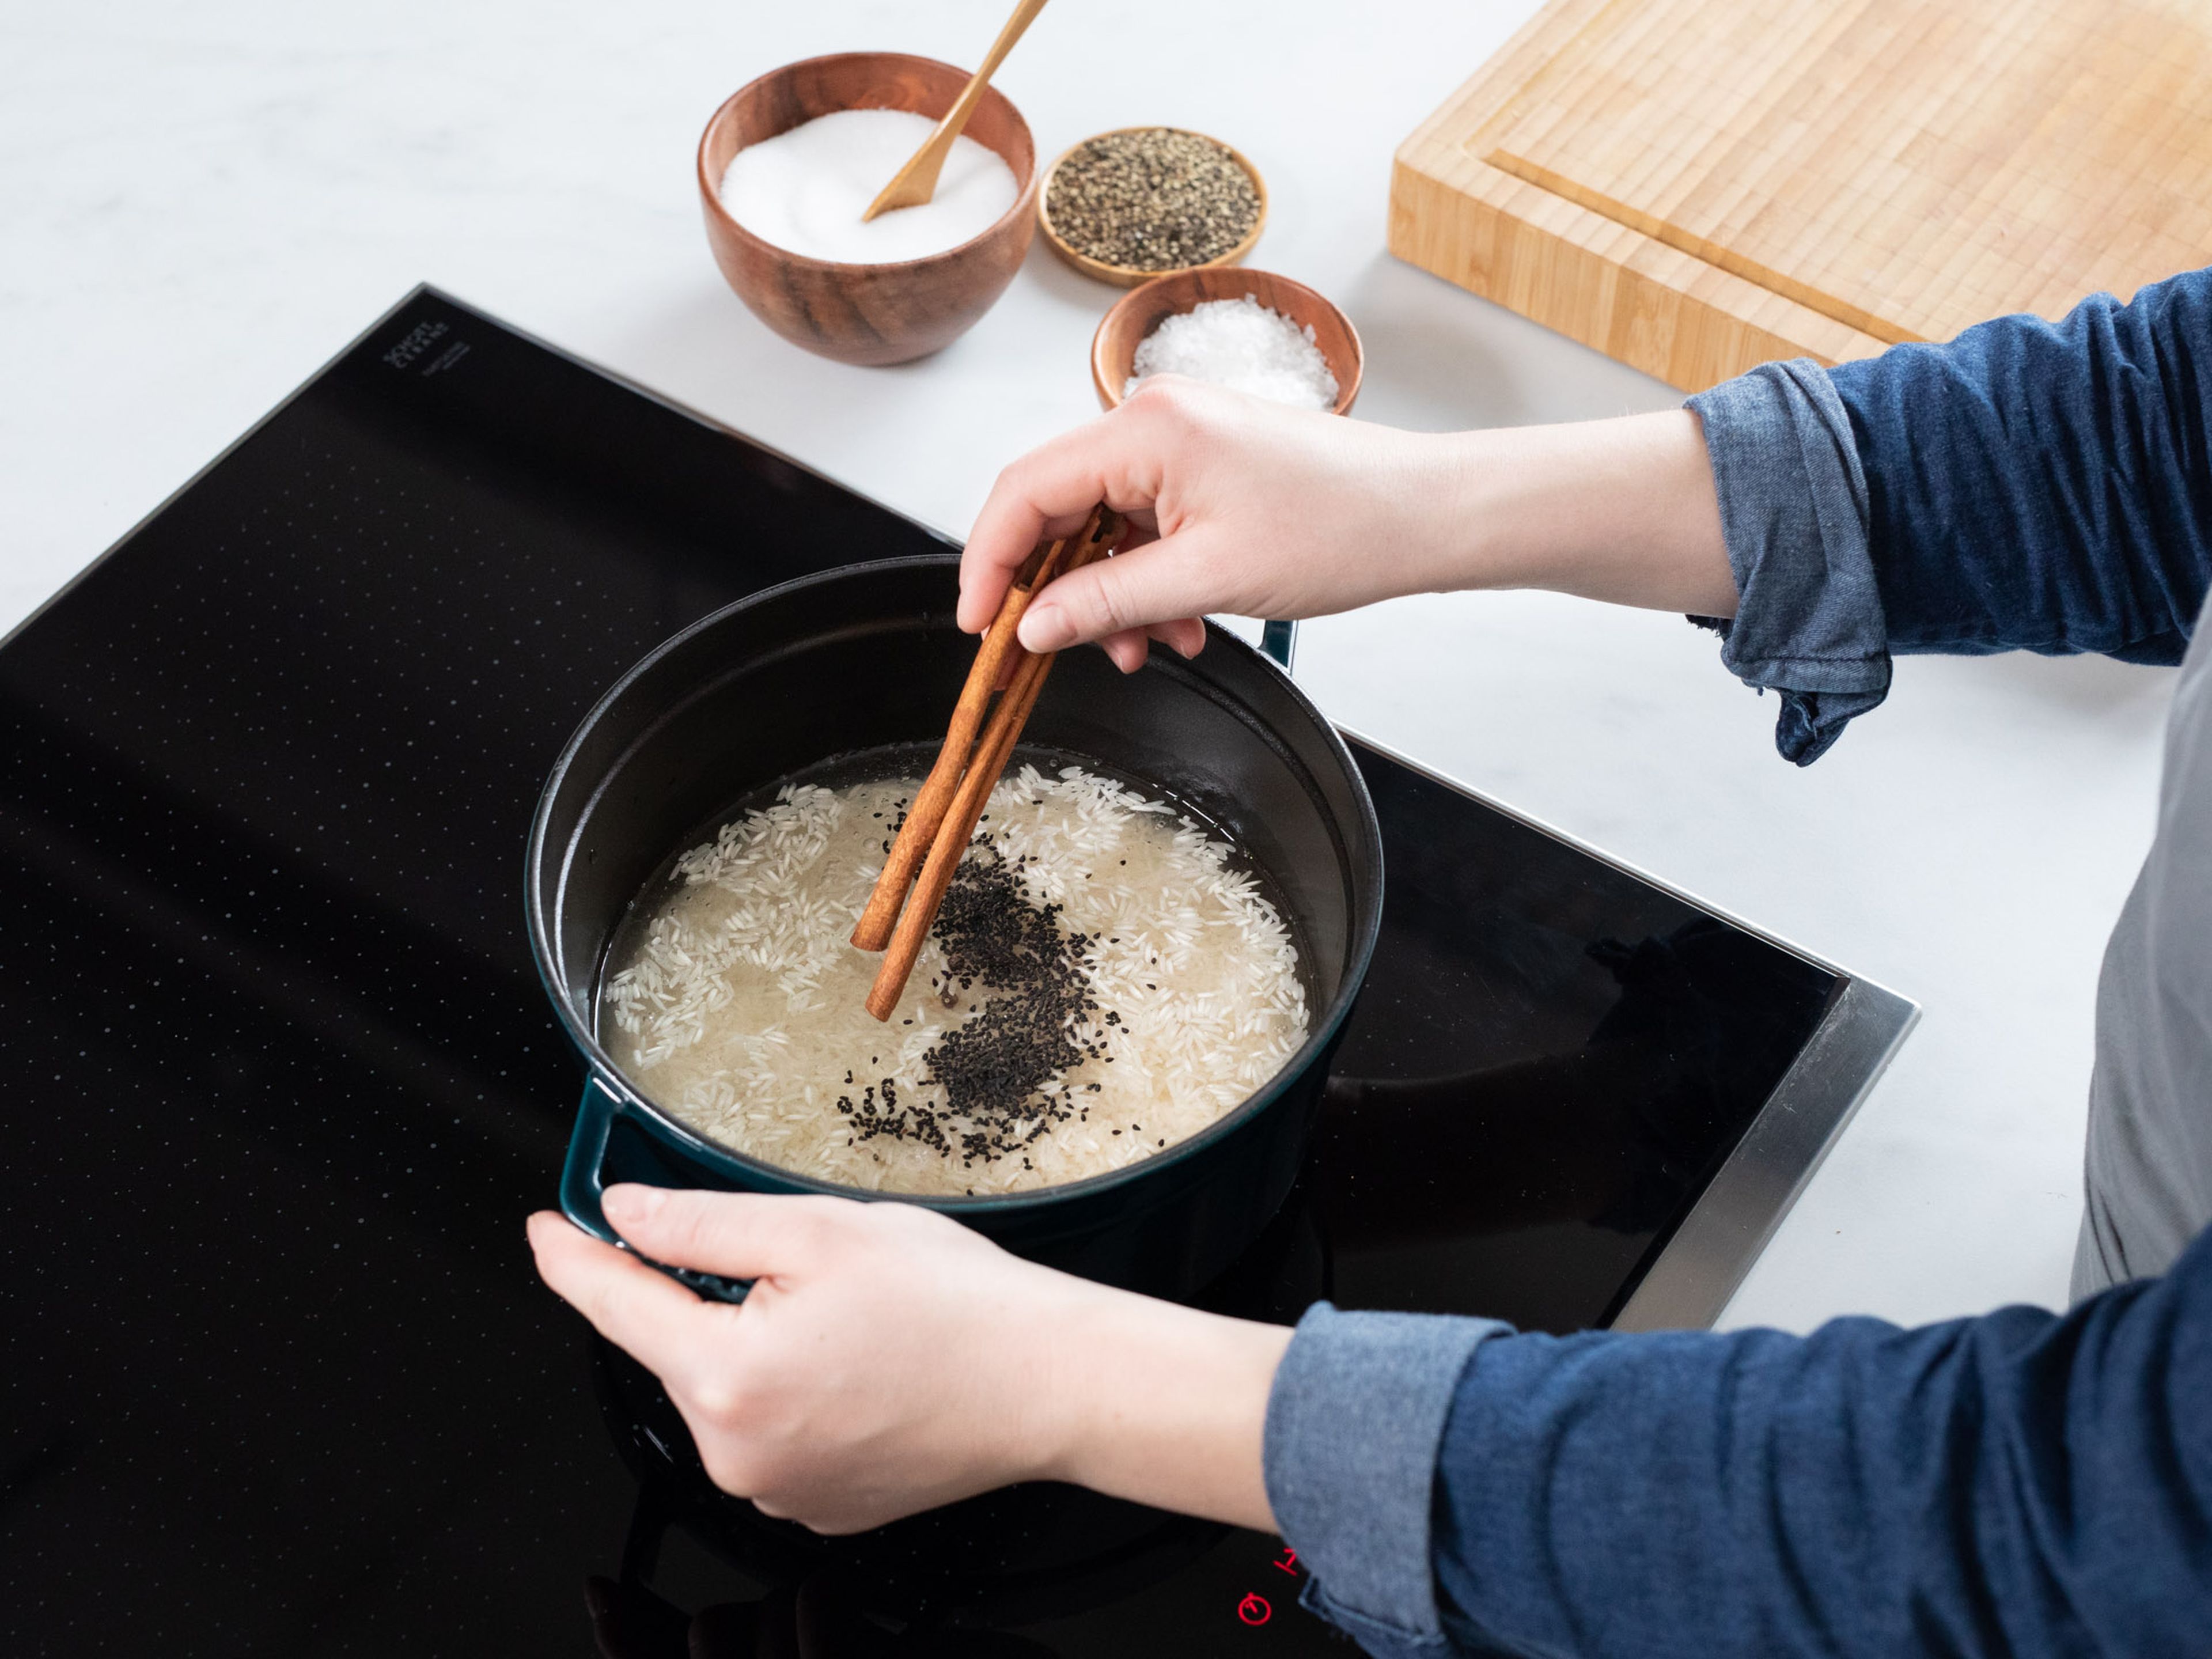 Reis in einen Topf mit Wasser, Schwarzkümmel, Zimt, Salz und Pfeffer geben. Einmal aufkochen lassen, danach Hitze reduzieren und abgedeckt ca. 5 Min. köcheln lassen. Nun abgießen und ausbreiten, damit er nicht klebt. Der Reis sollte zu diesem Zeitpunkt noch nicht durchgekocht sein.